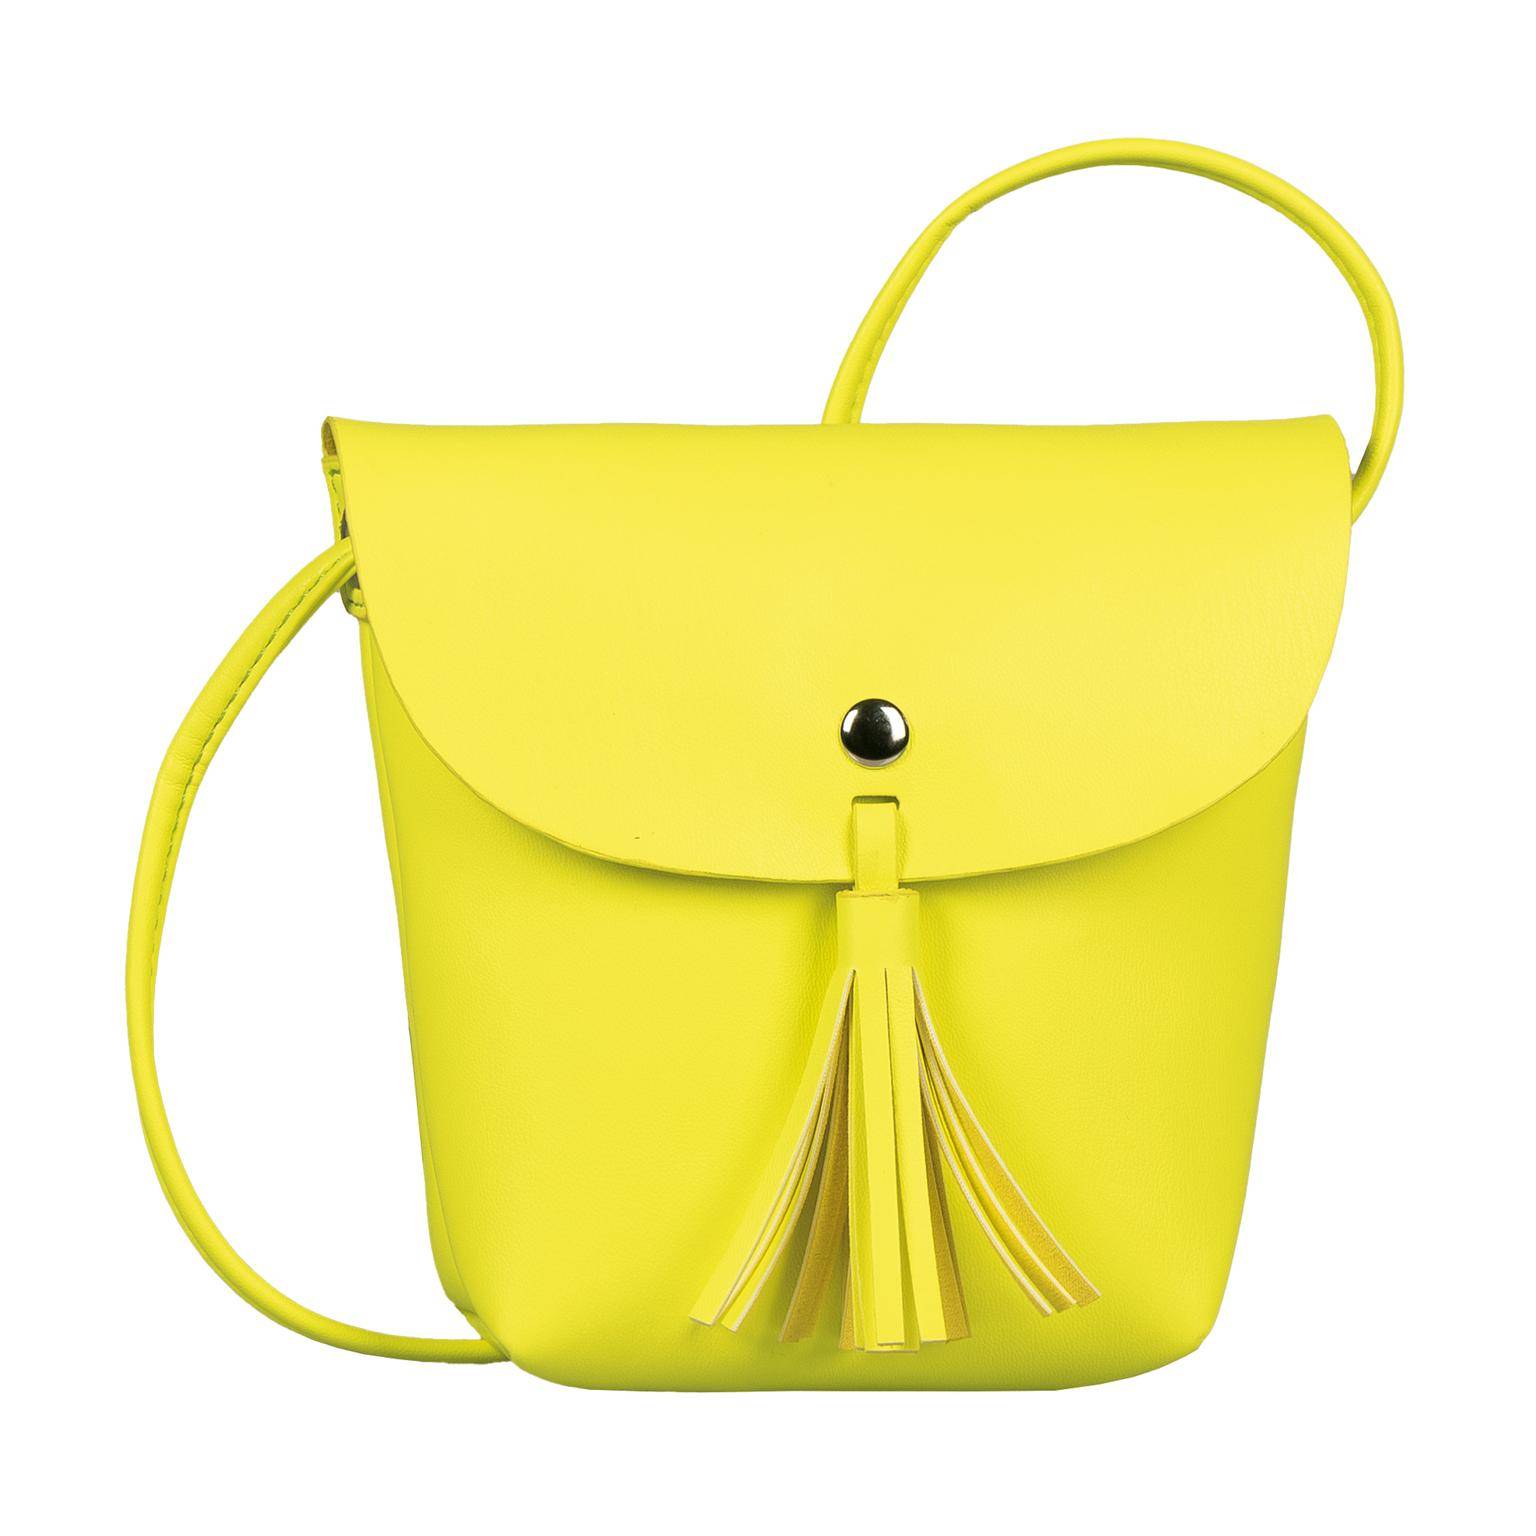 Женская сумка Tom Tailor Bags, желтая, цвет желтый, размер ONE SIZE